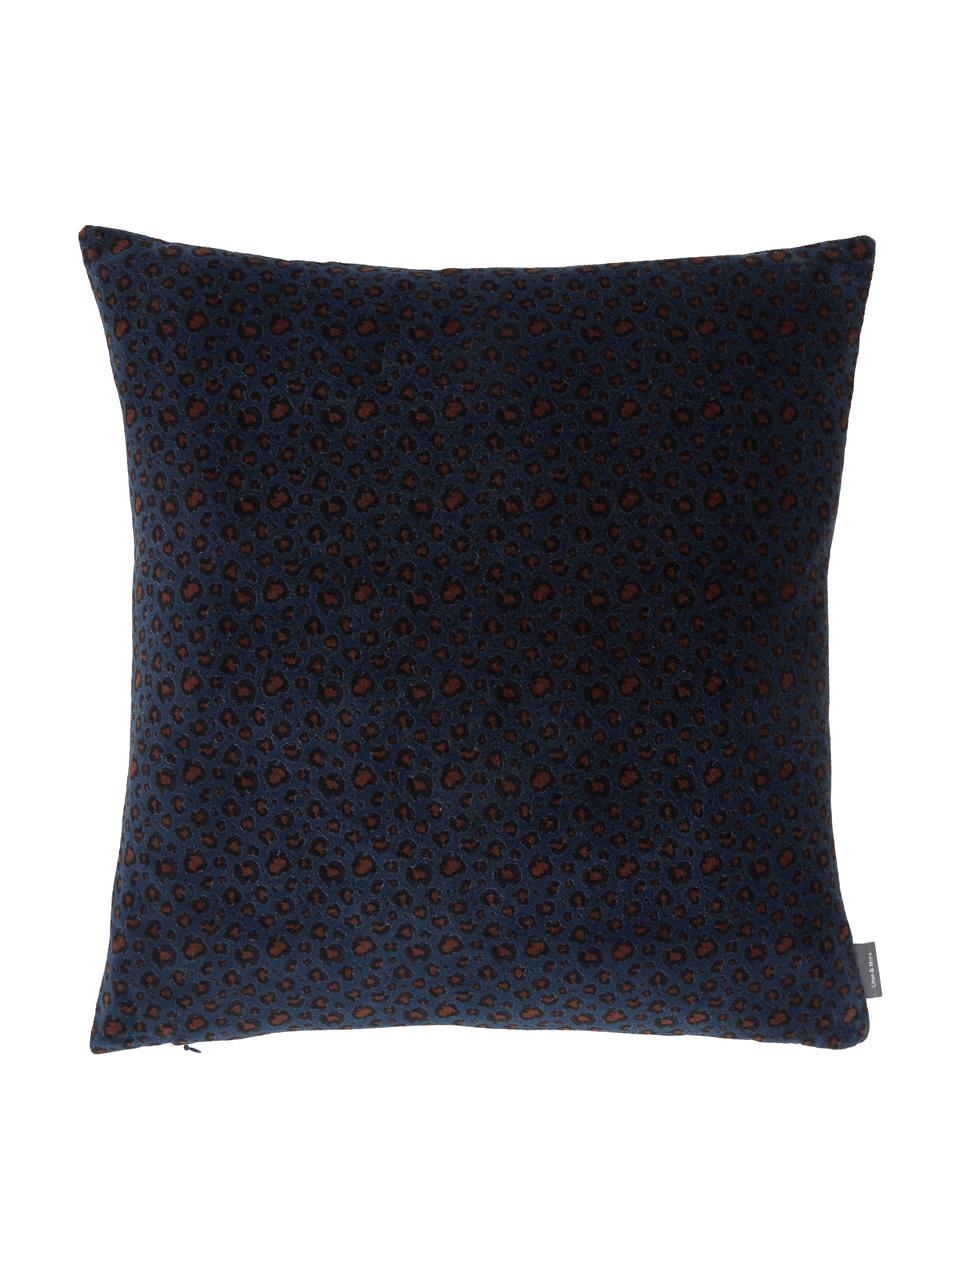 Samt-Kissen Leopard, mit Inlett, Bezug: 100% Baumwolle, Blau, Schwarz, Beige, 45 x 45 cm